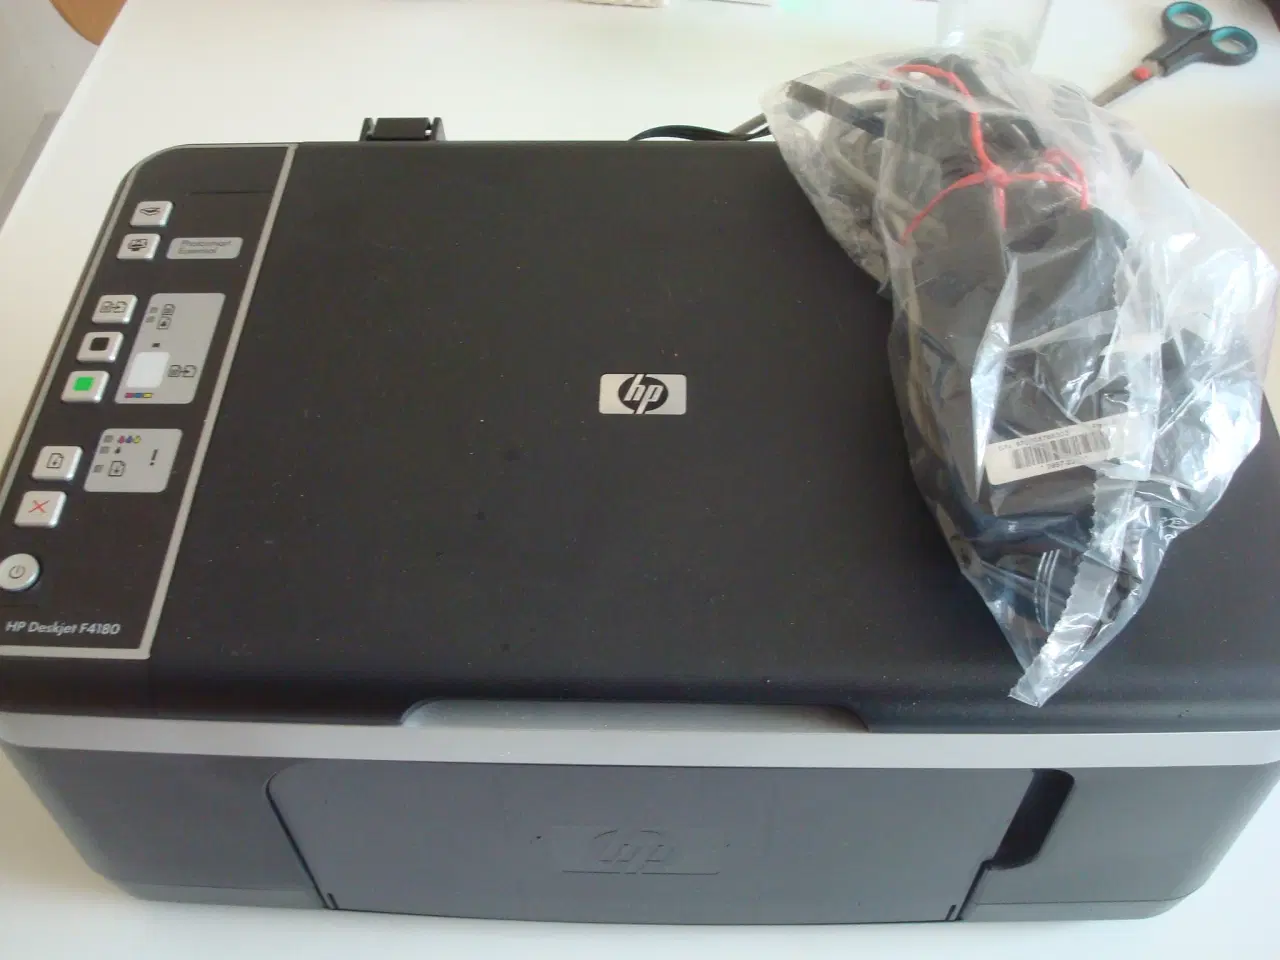 Billede 1 - HP Deskjet F4180 printer